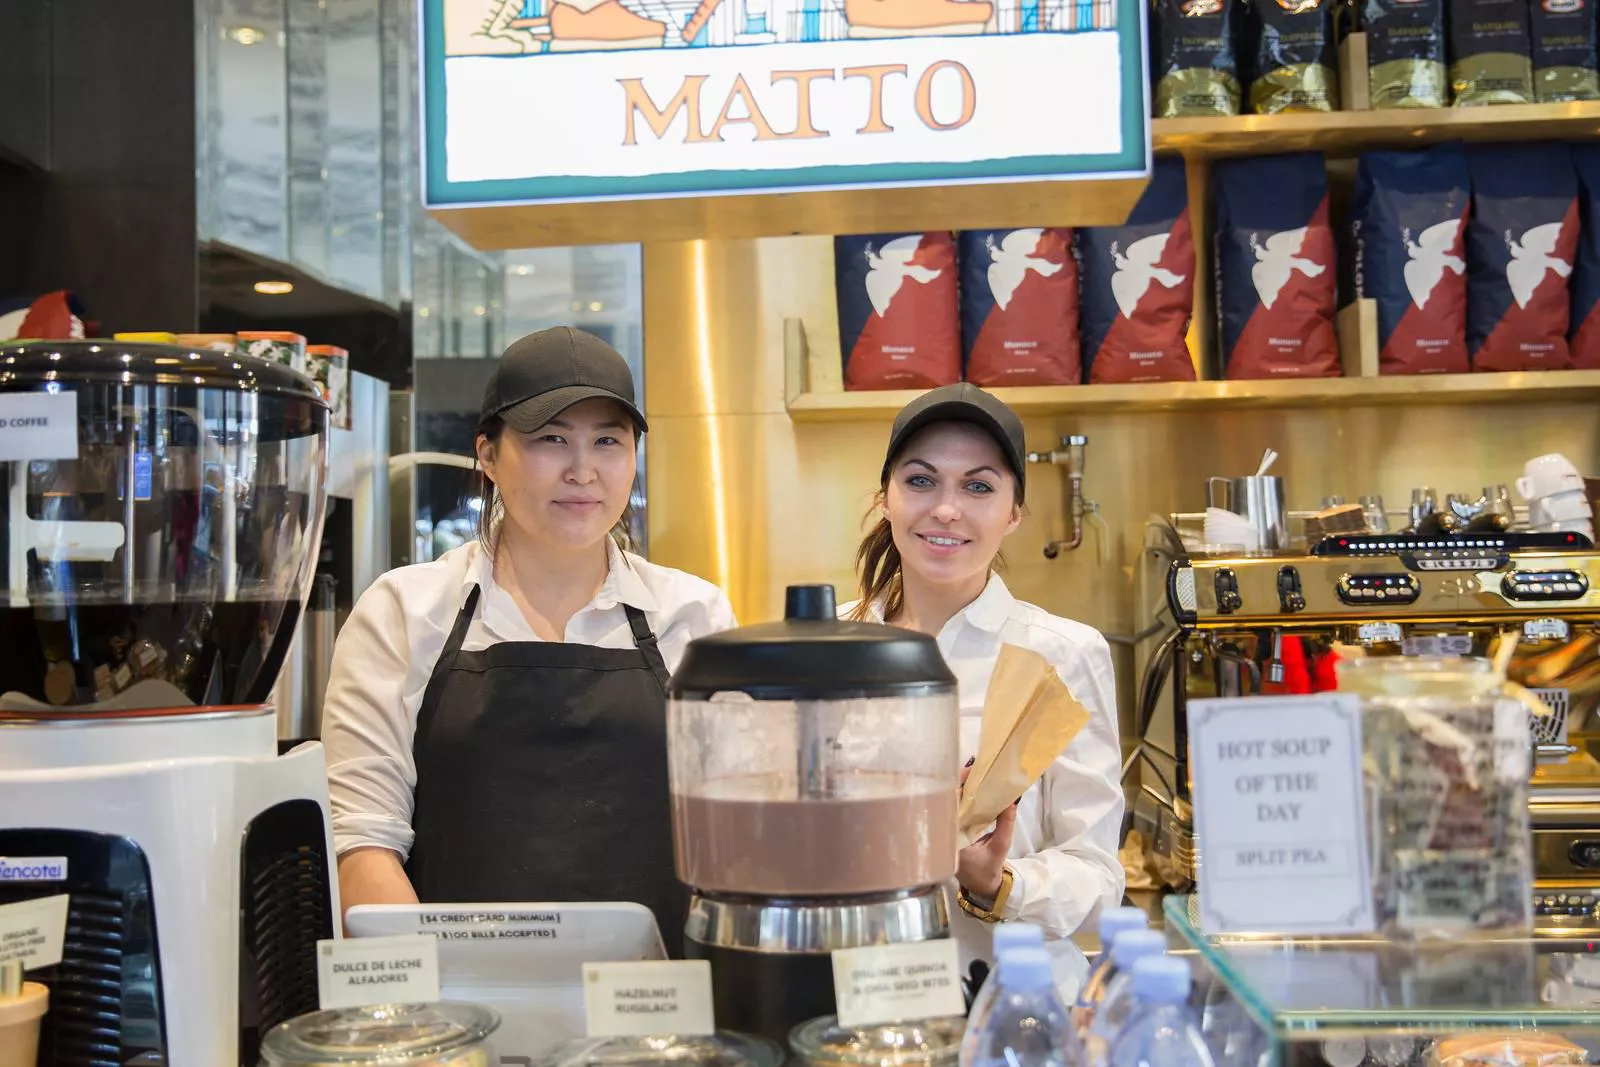 Matto Espresso 8 W 46th Street